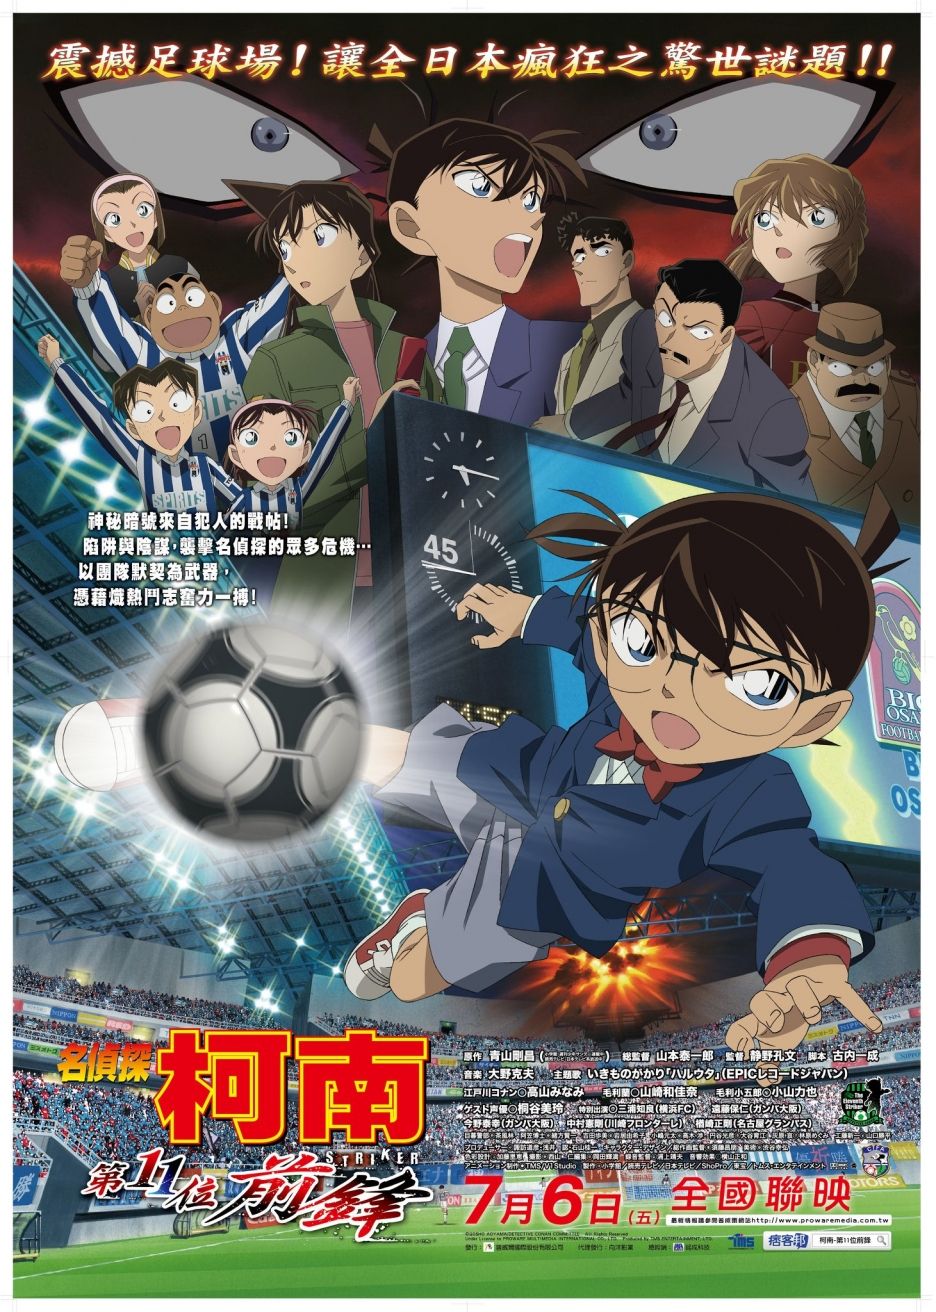 Episode Terakhir Anime Detective Conan